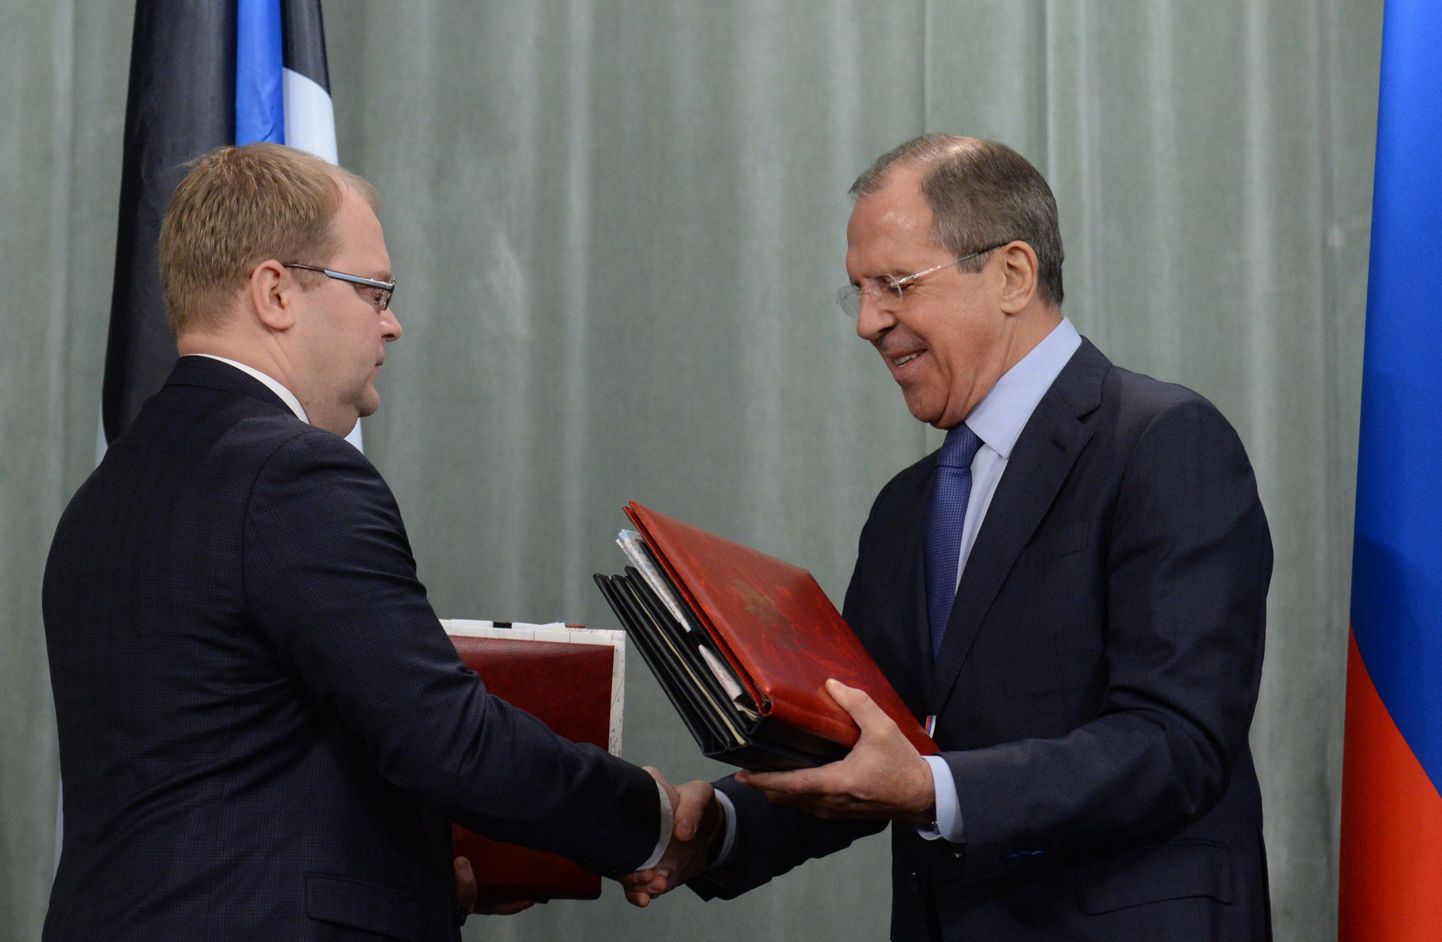 Välisminister Urmas Paet ja Vene välisminister Sergei Lavrov allkirjastasid 18. veebruaril 2014 Moskvas Eesti-Vene piirilepped teist korda.